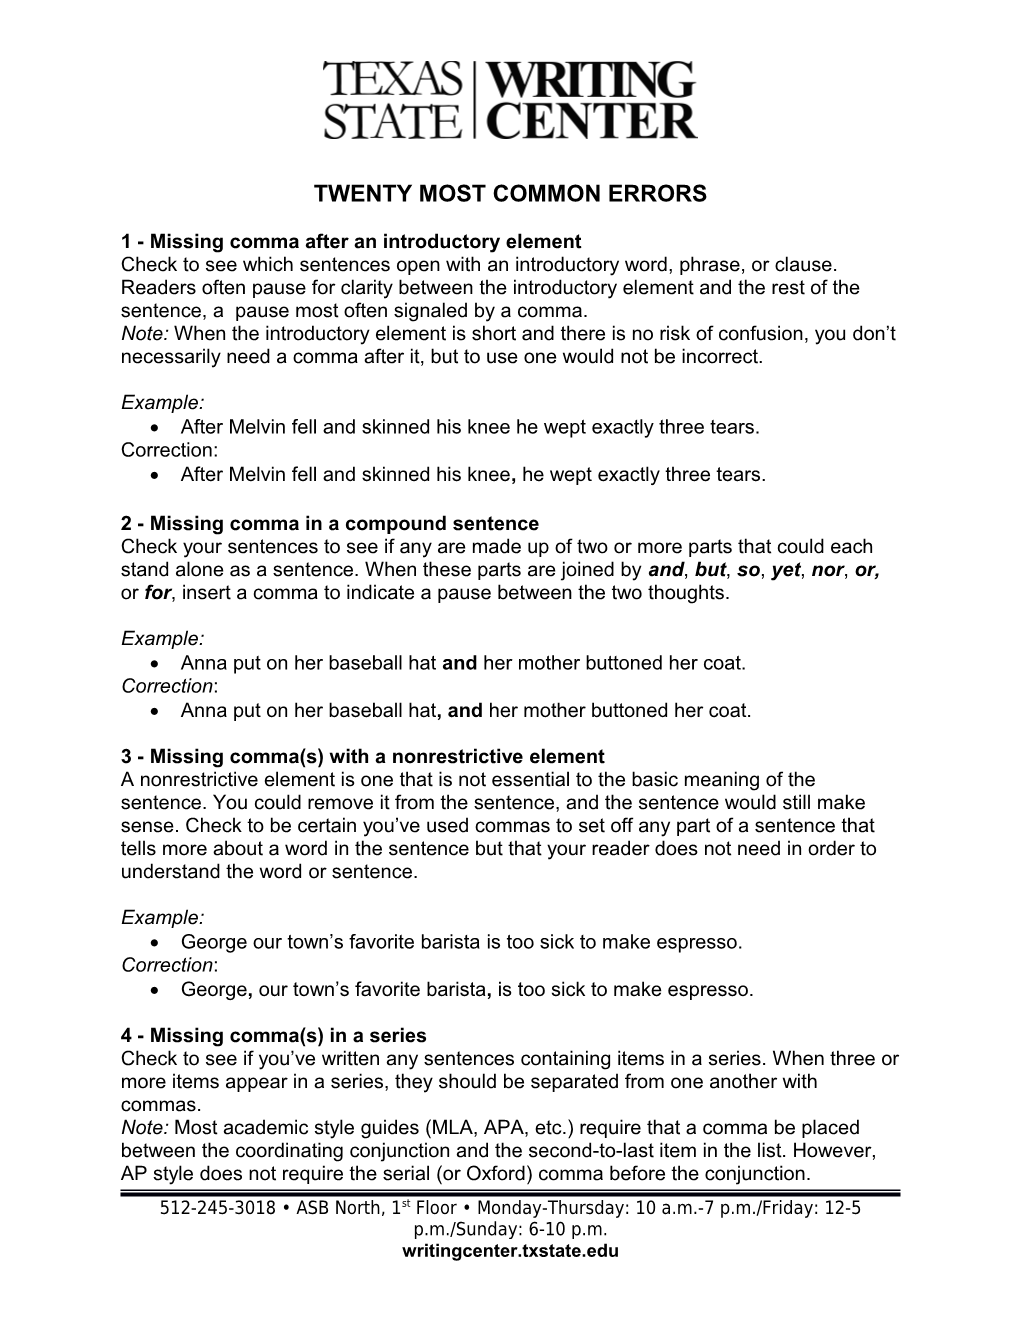 Twenty Most Common Errors